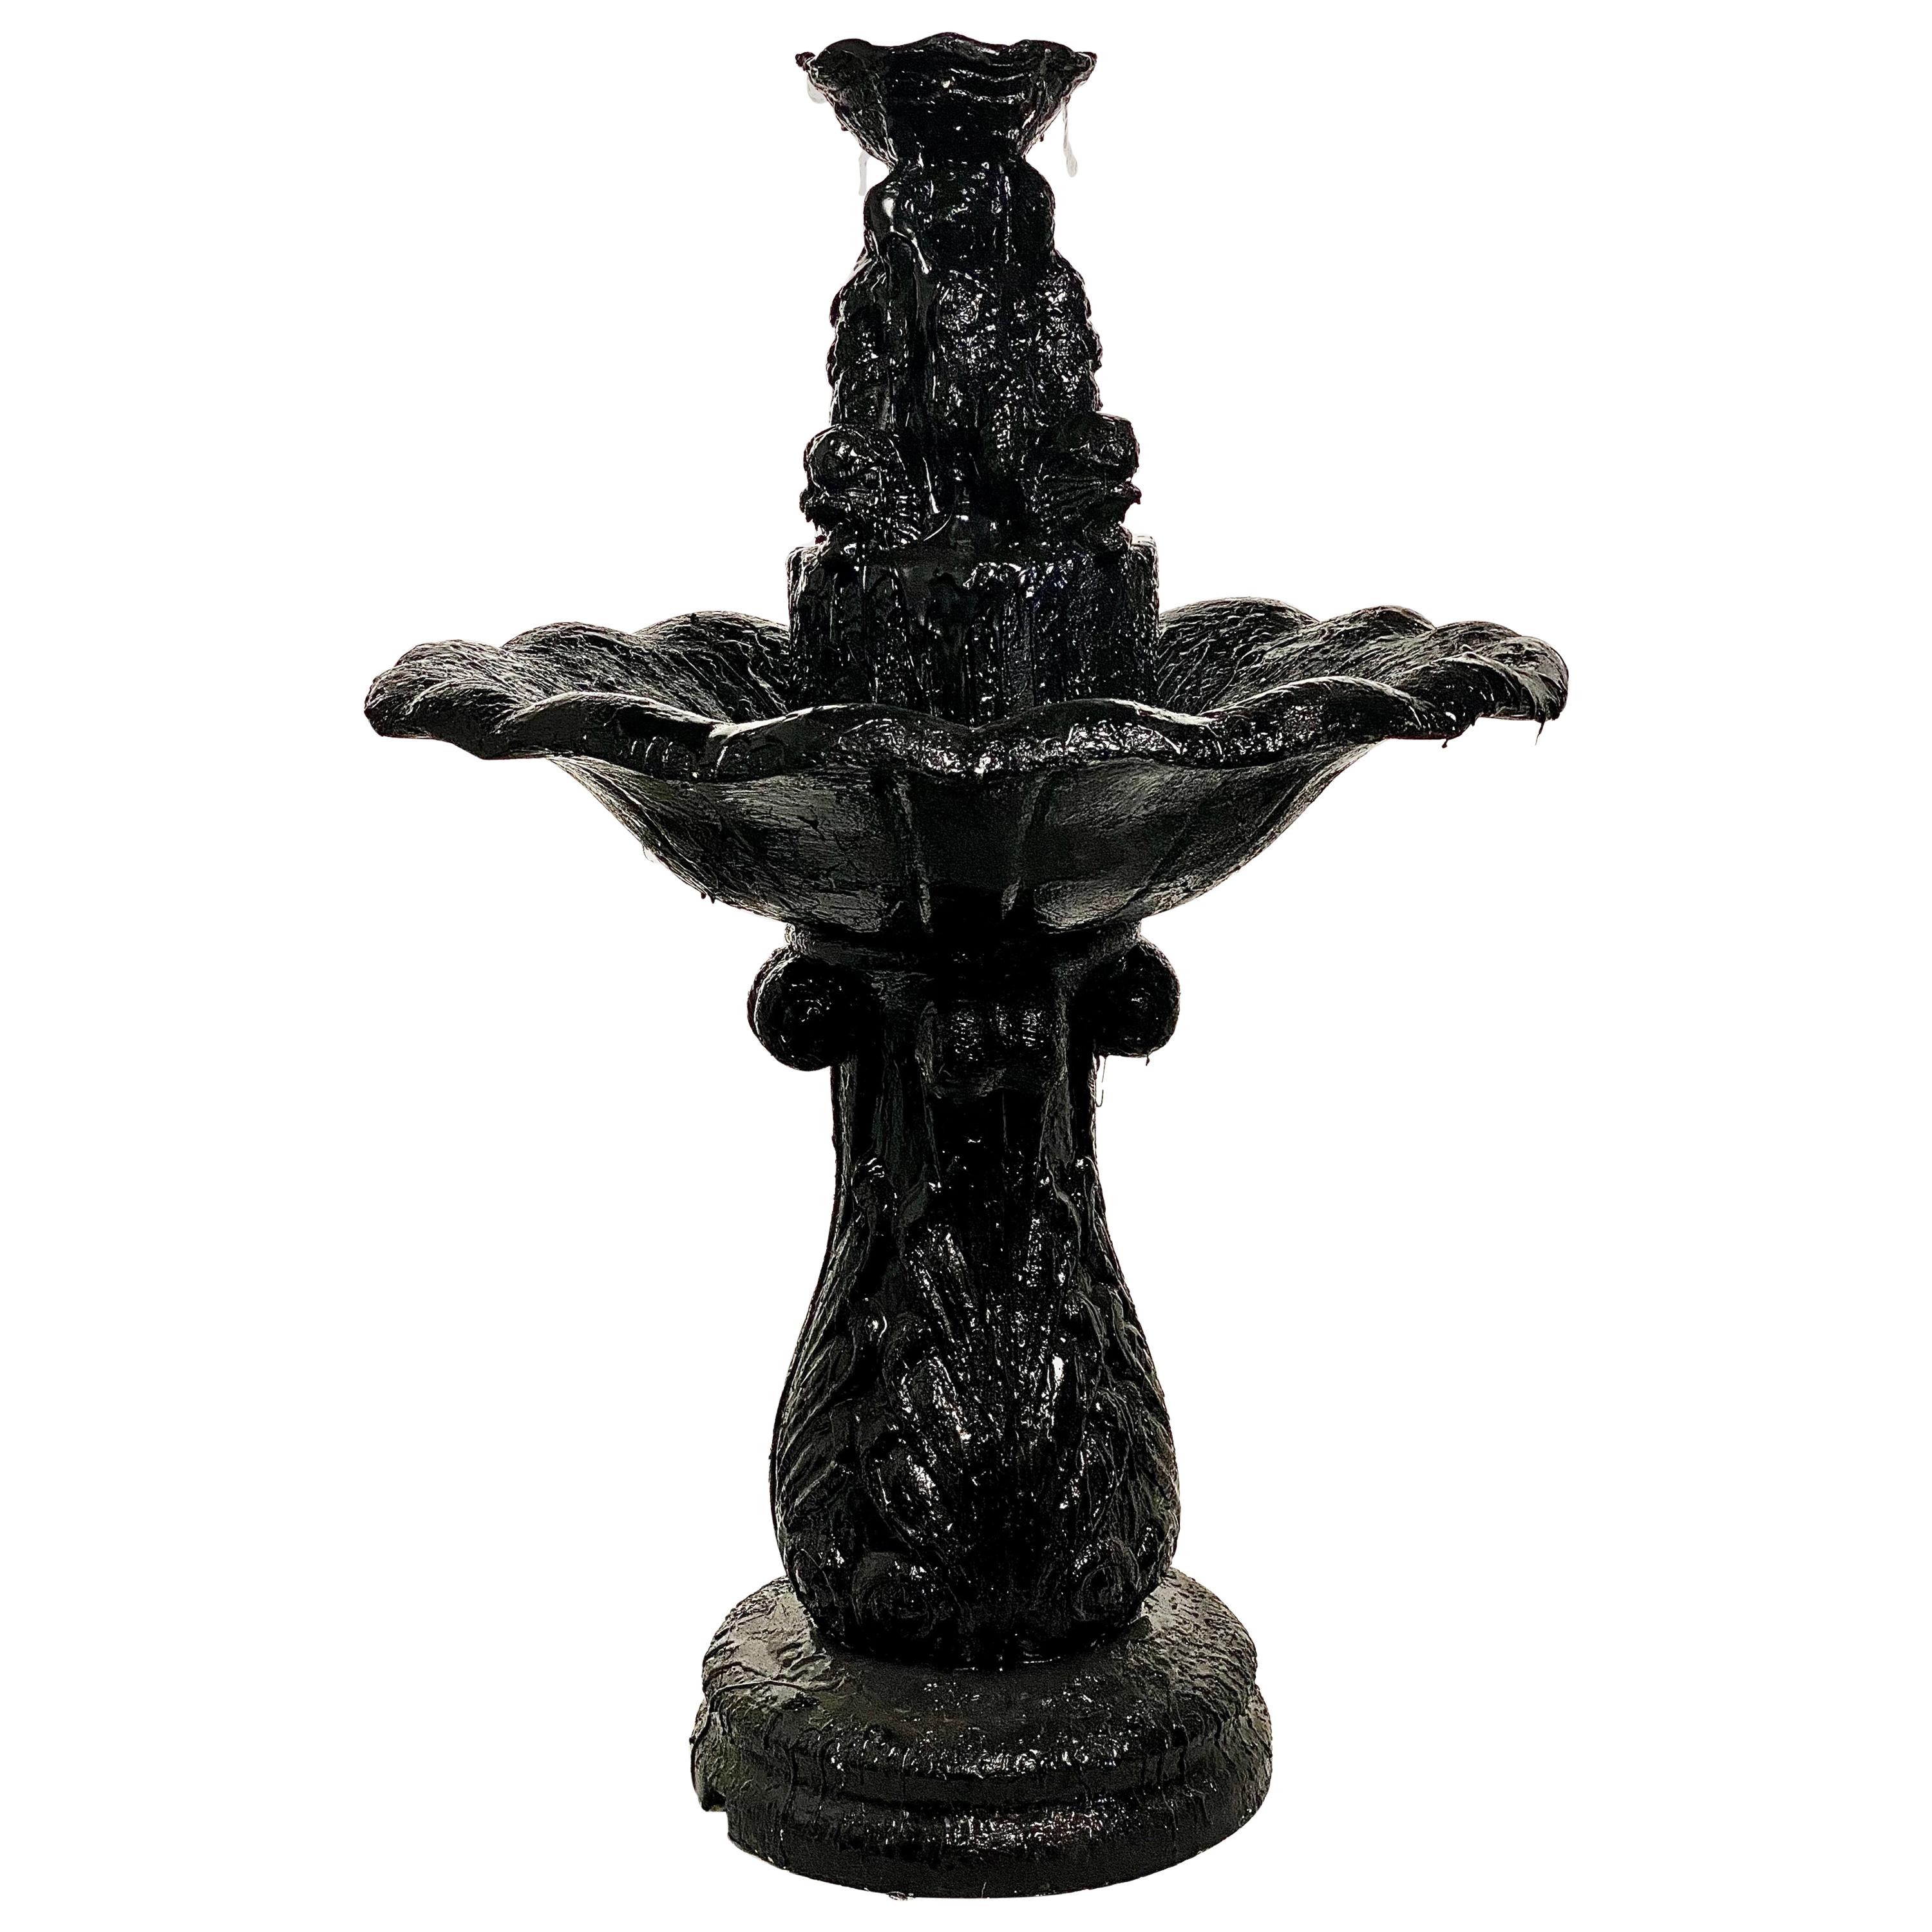 Black Fountain Tar Sculptural, 21st Century by Mattia Biagi